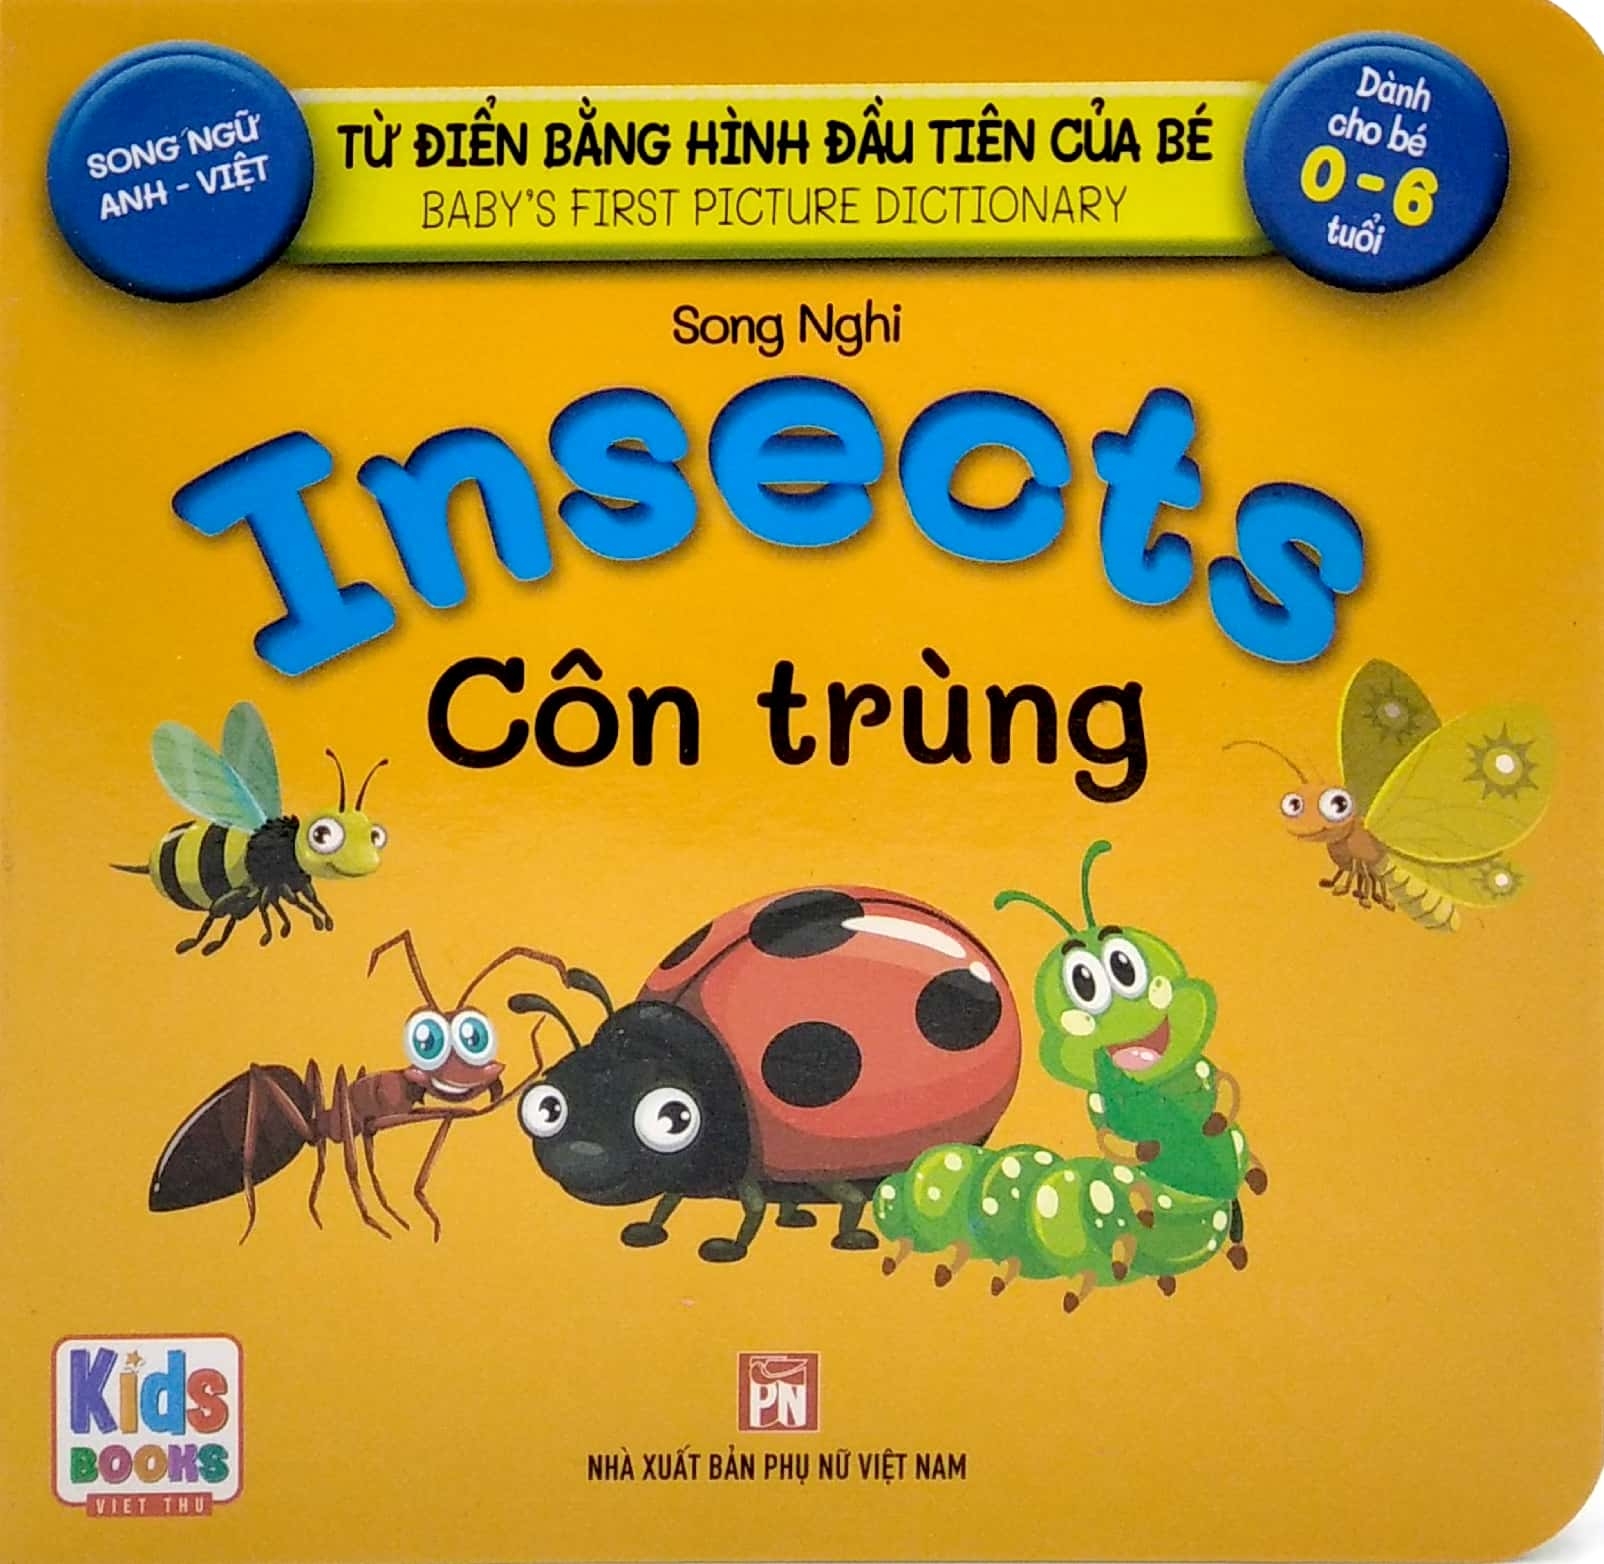 Sách - Baby'S First Picture Dictionary - Từ Điển Bằng Hình Đầu Tiên Của Bé - Côn Trùng - Insects (Bìa Cứng)